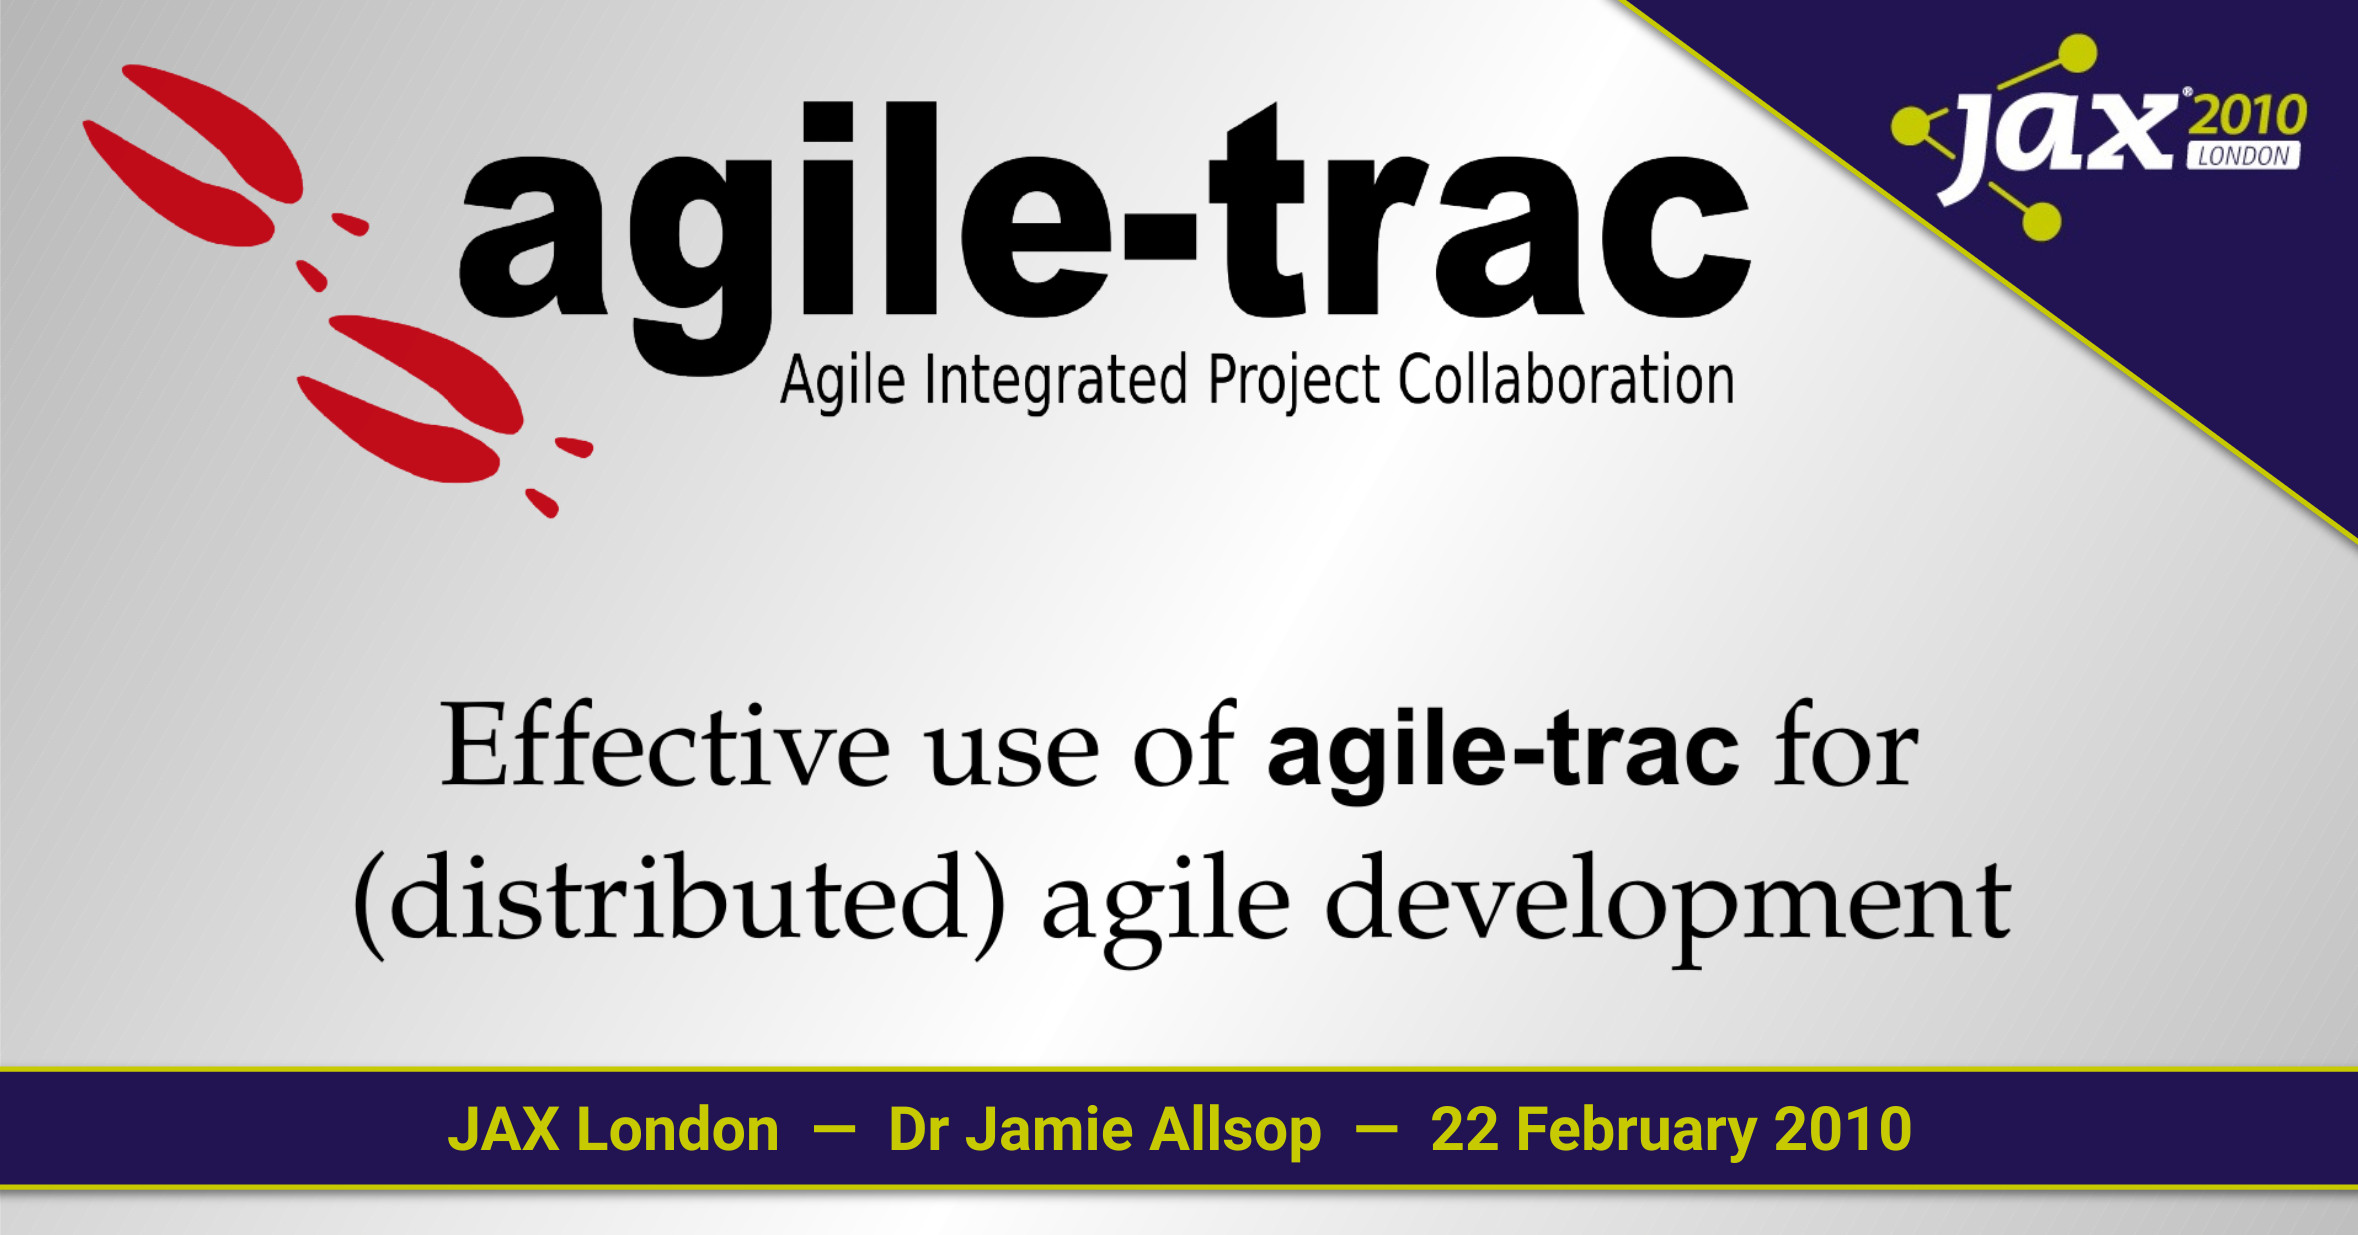 Effective use of Agile-Trac for Agile Development